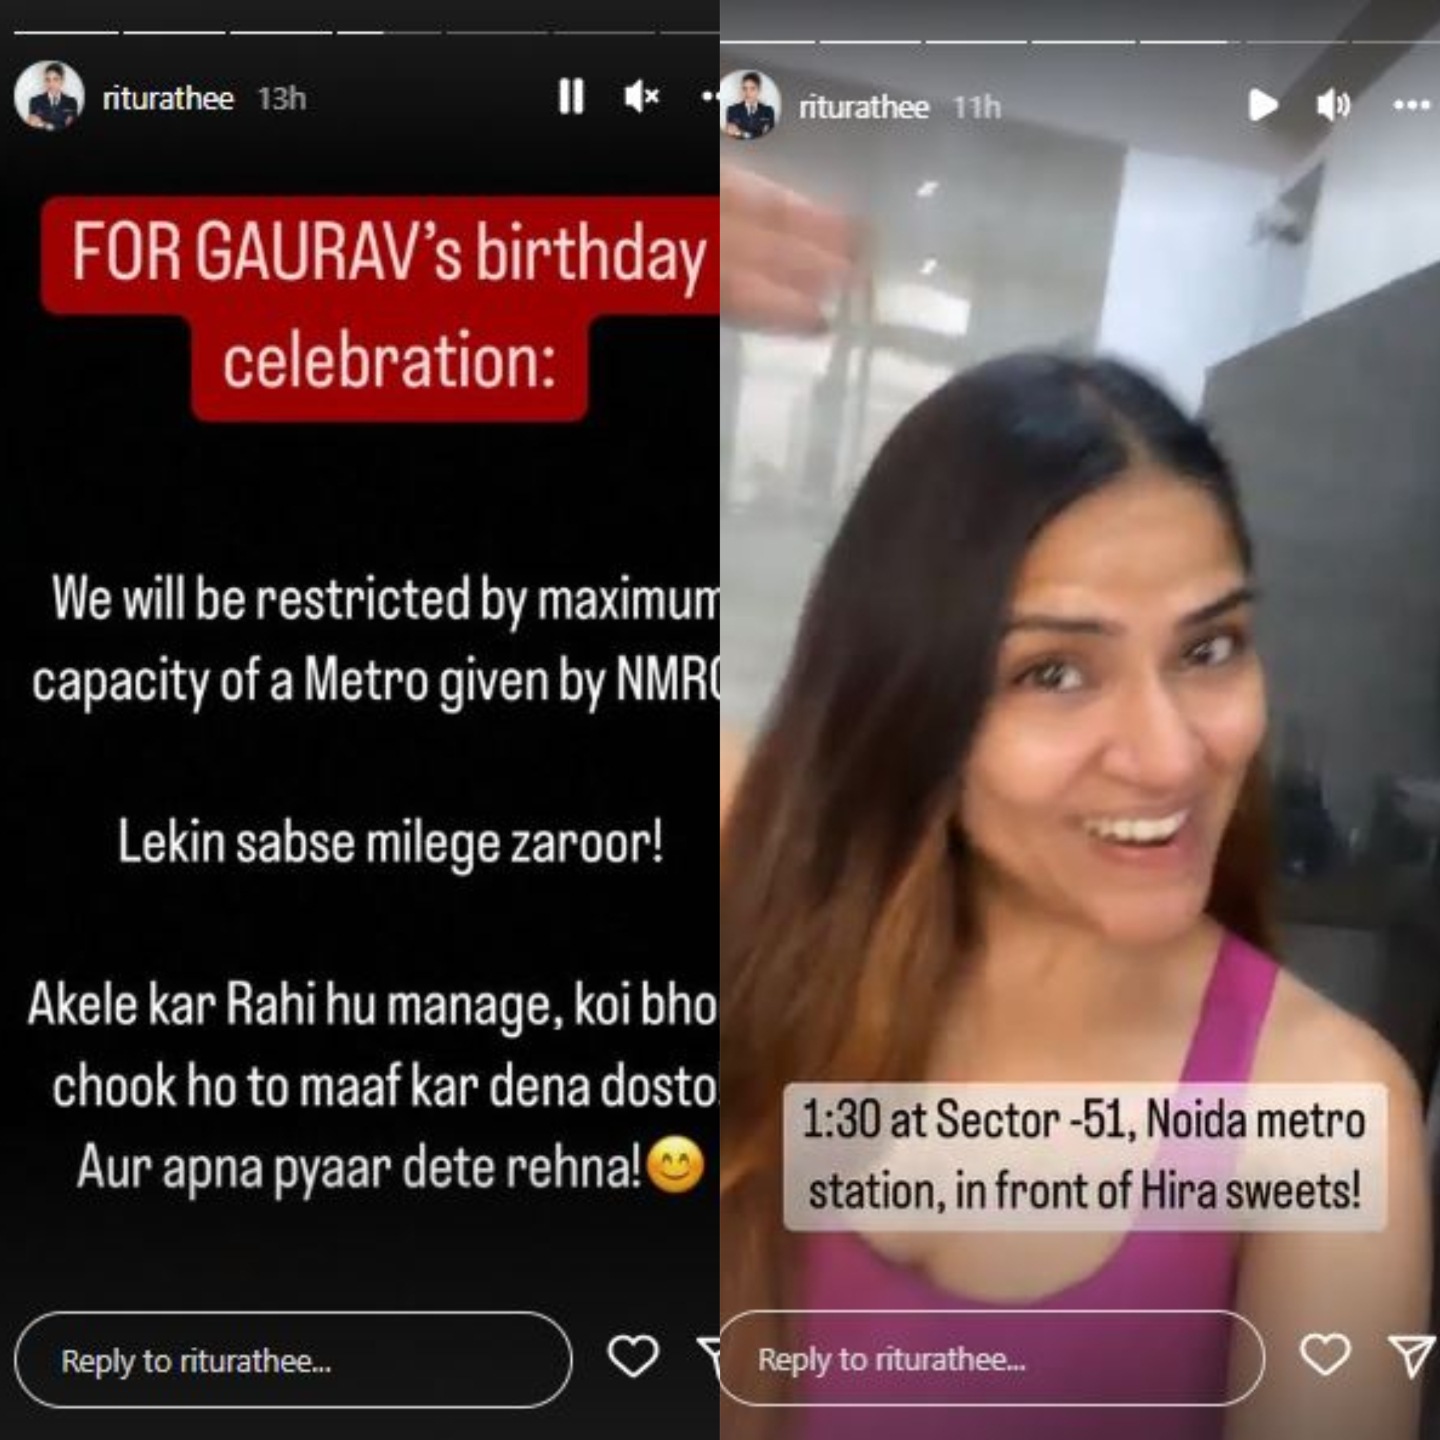 Gaurav's wife, pilot YouTube vlogger Ritu Rathee Taneja, shared details on Instagram.